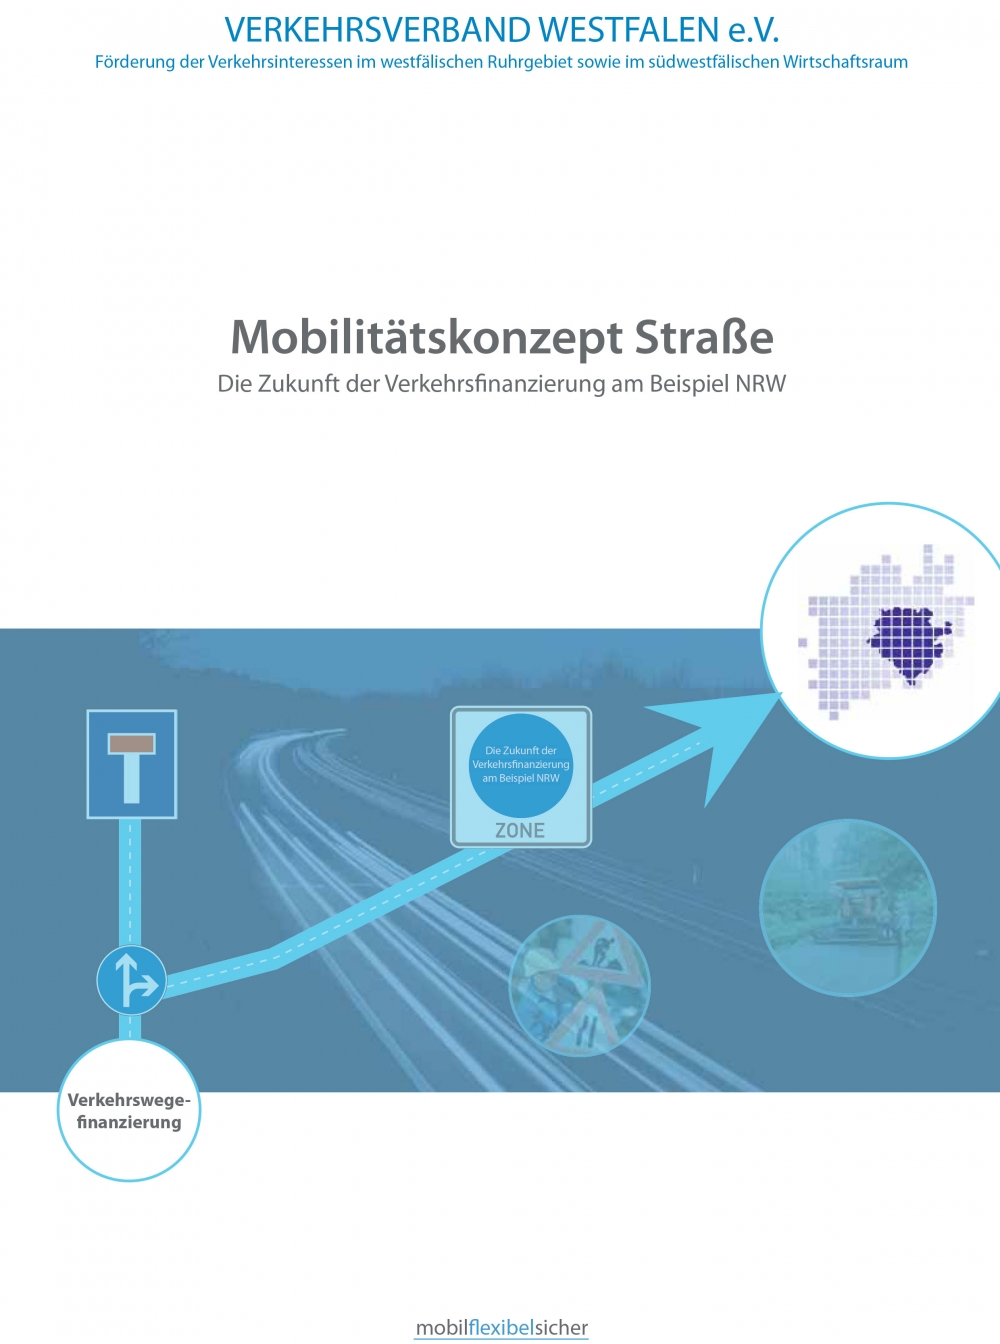 Mobilitätskonzept Straße  - Die Zukunft der Verkehrsfinanzierung am Beispiel NRW